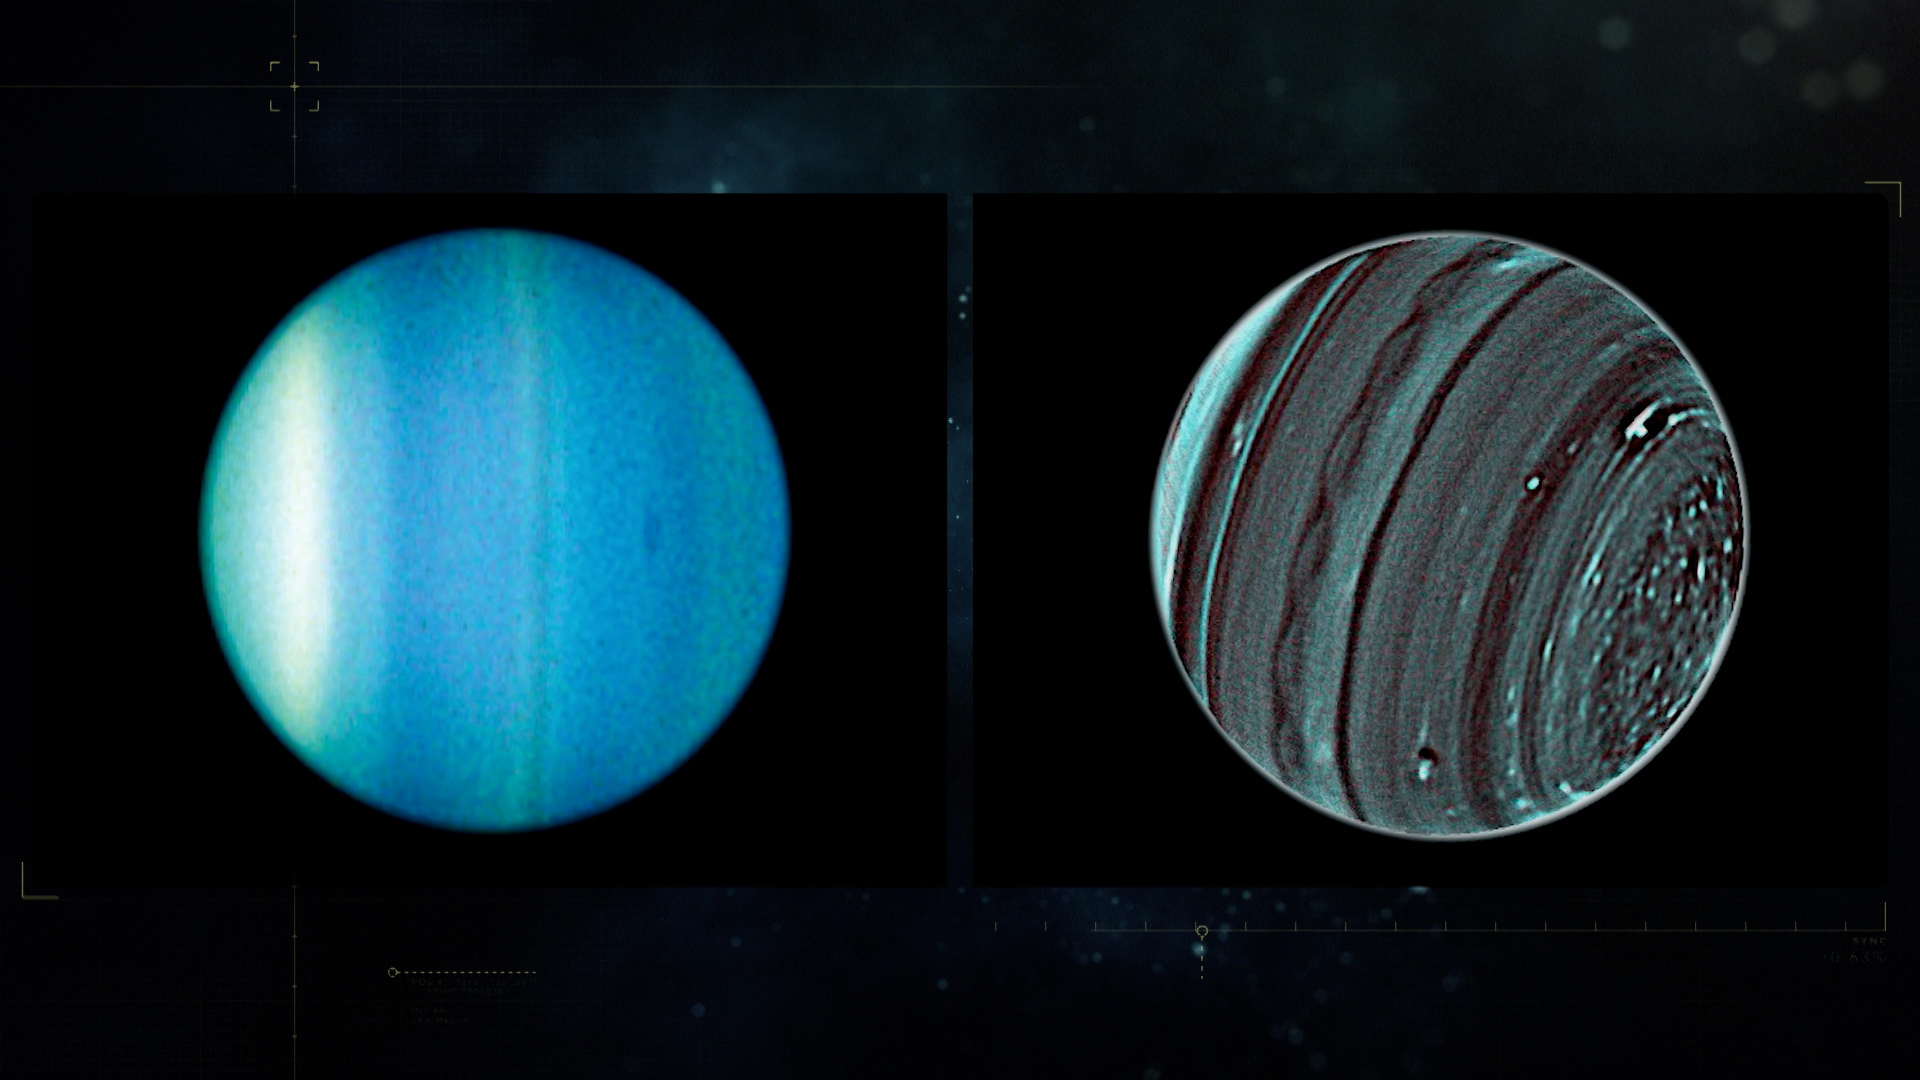 天王星还有着独特的表面颜色,这是因为它的大气中有着比其他行星都要